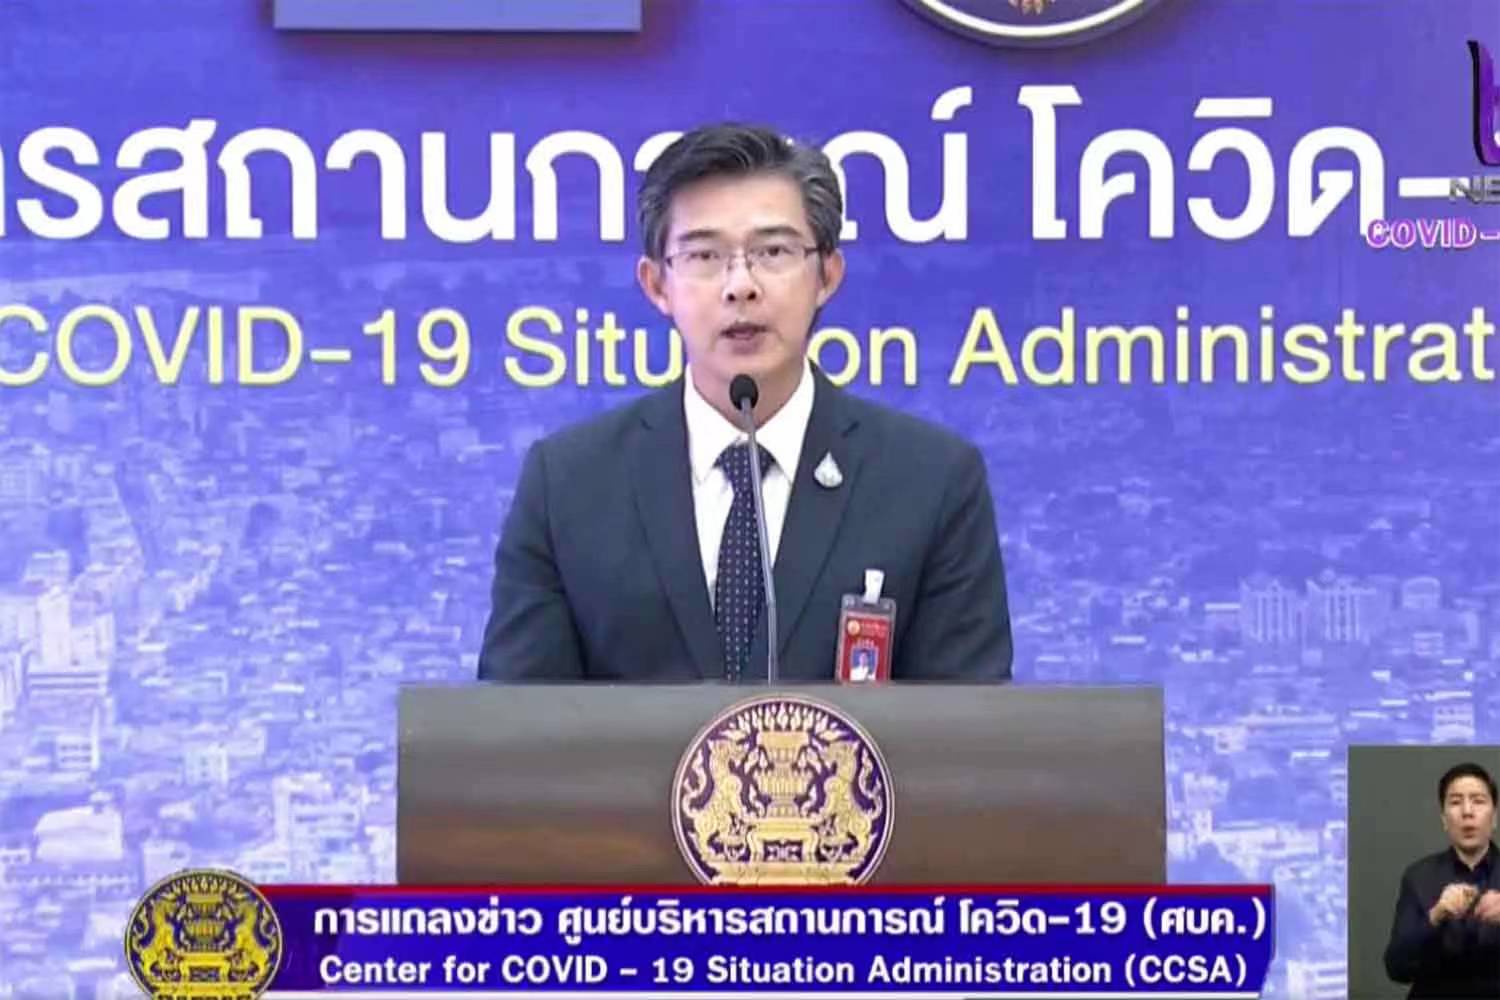 泰国新冠疫情防控措施升级 17日起关闭学校和娱乐场所两周